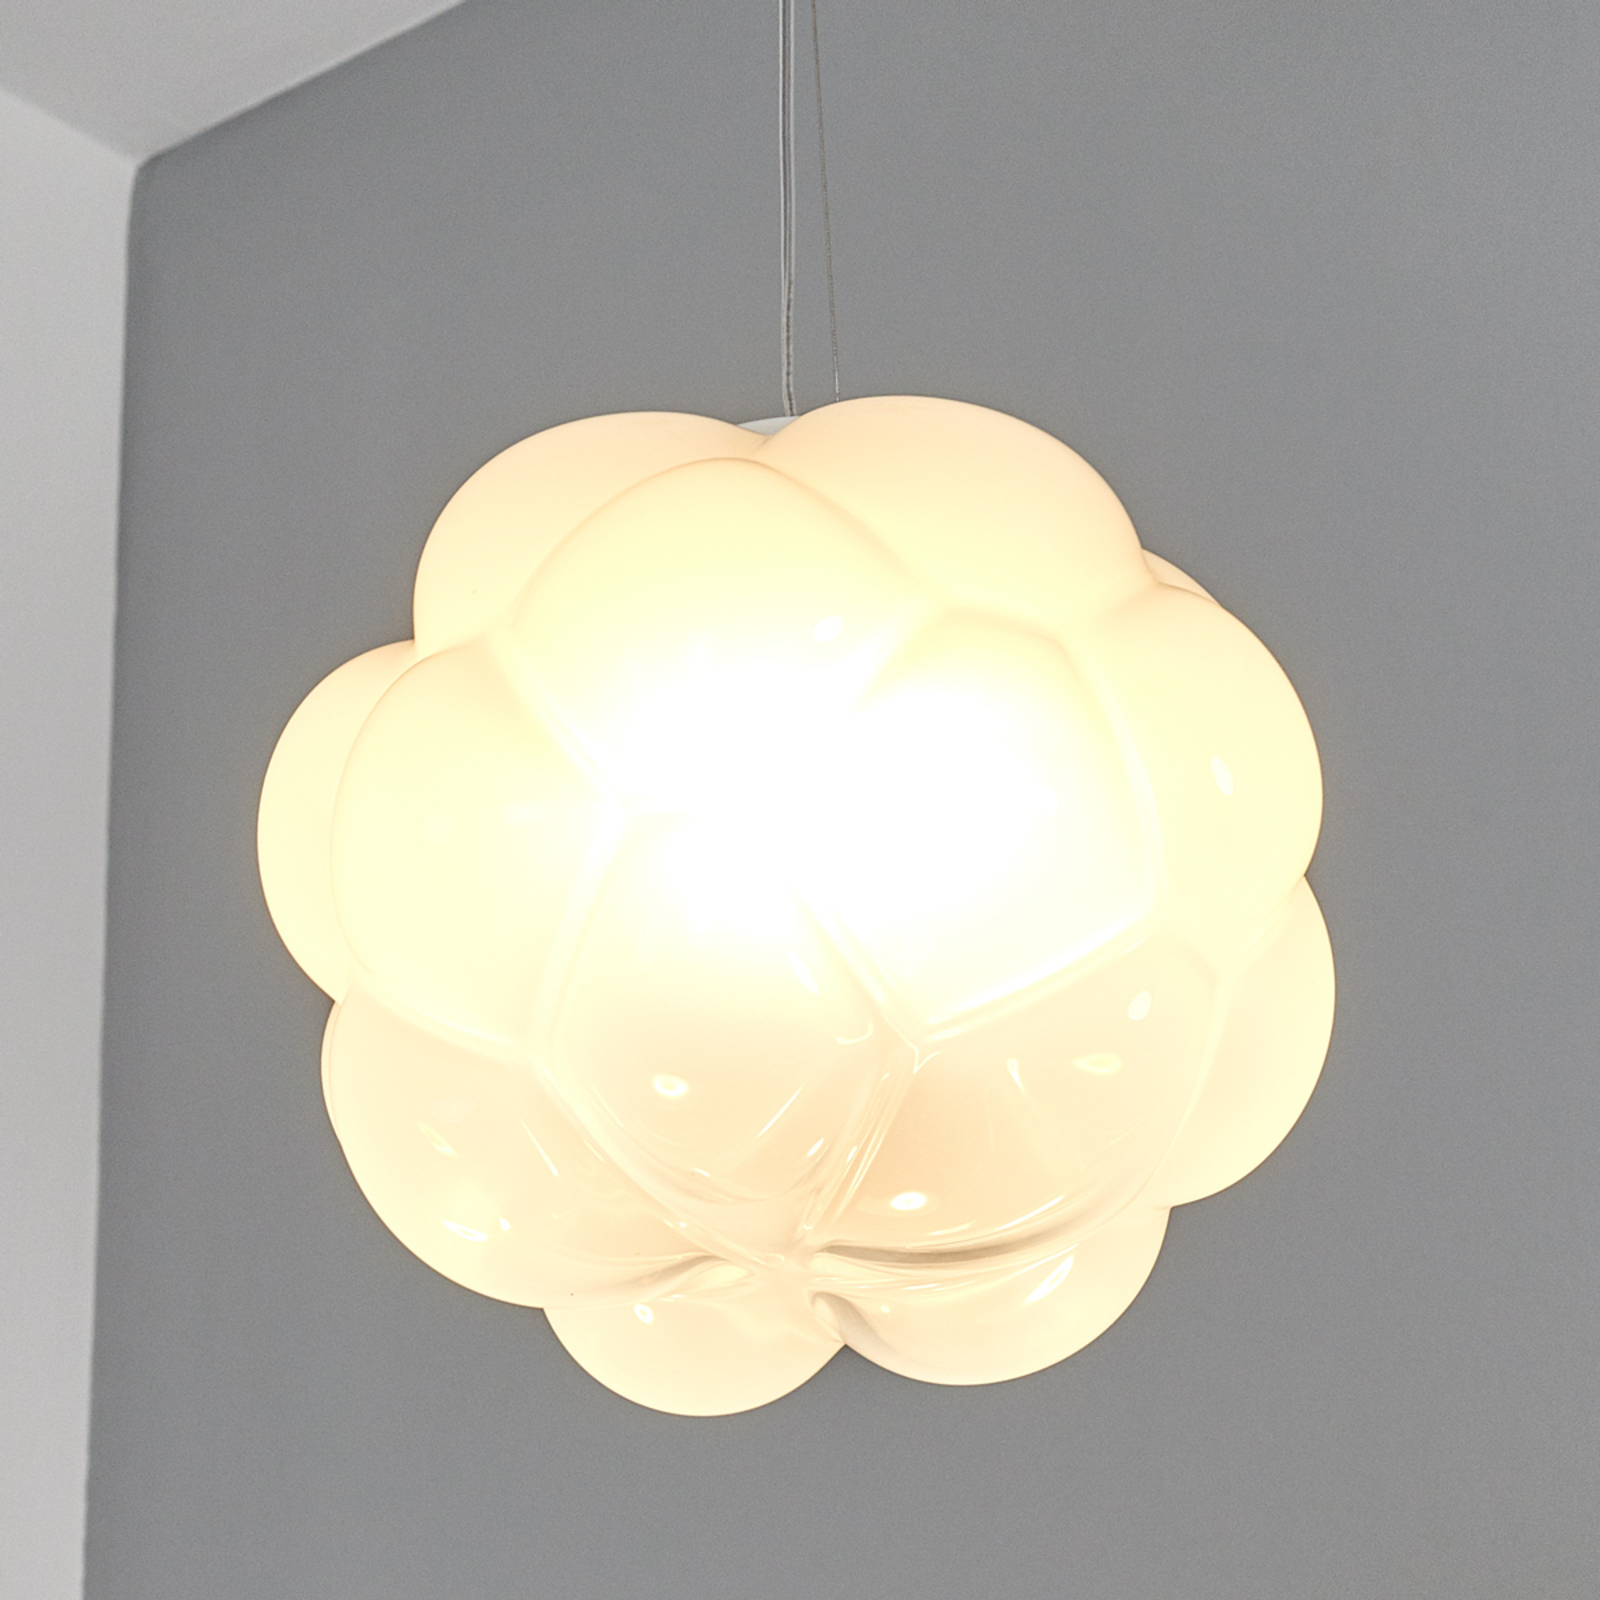 Lampa wisząca LED CLOUDY w kształcie chmurki 26 cm